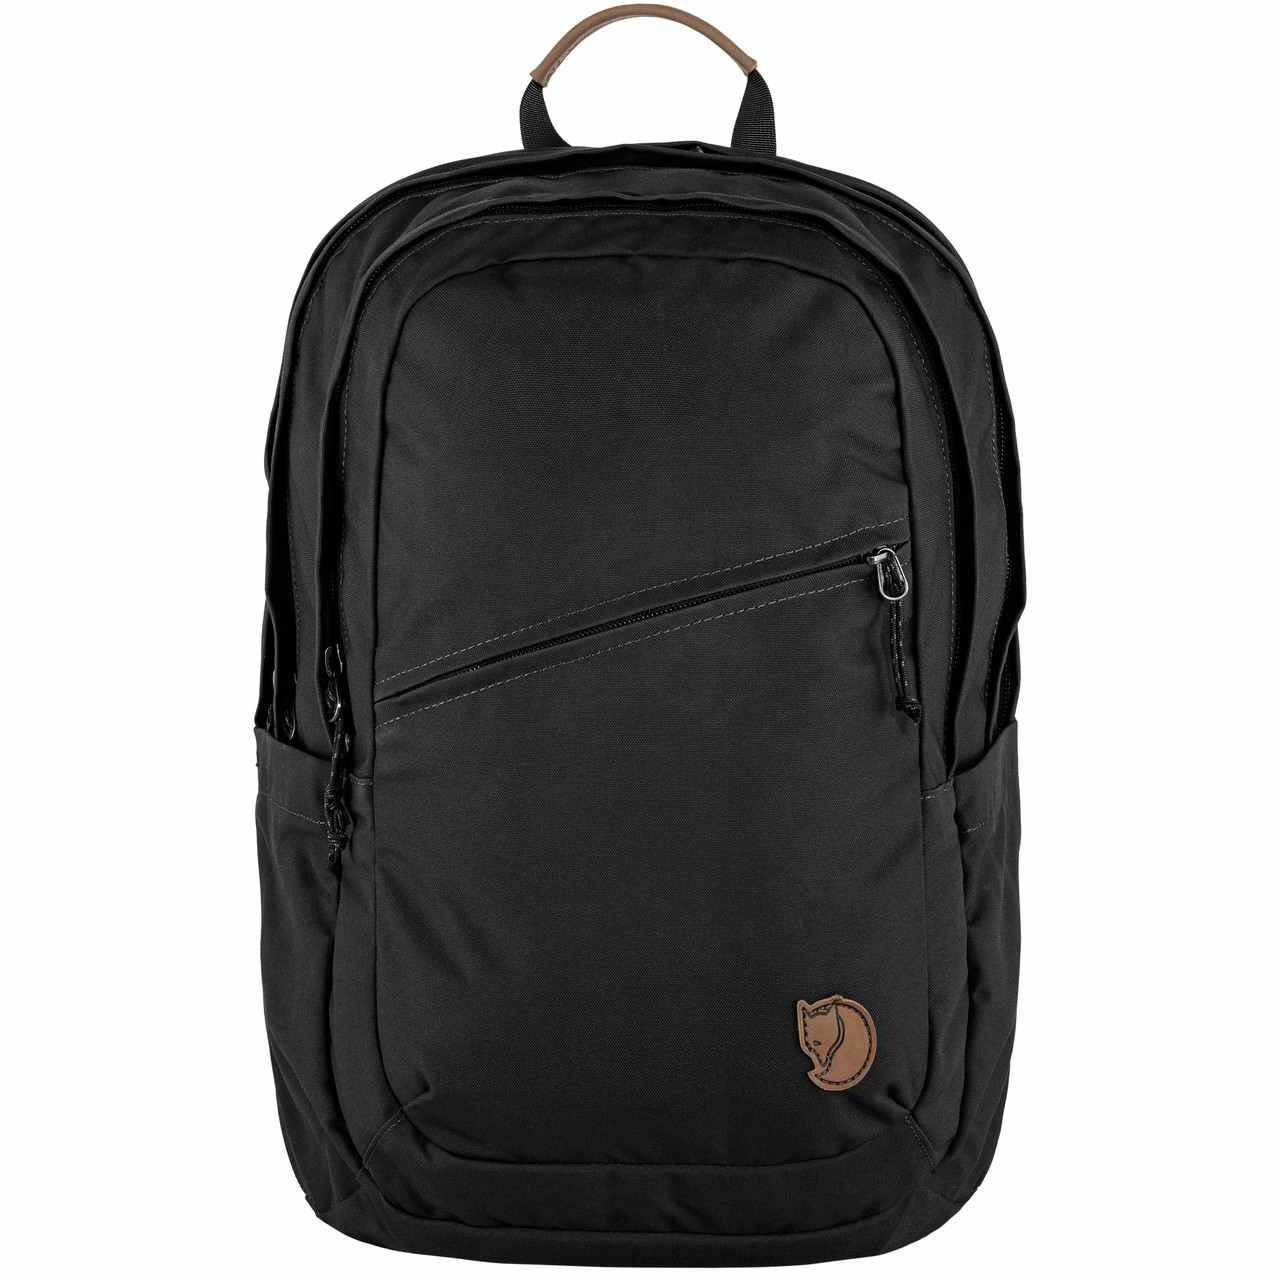 Raven 28 Backpack Black